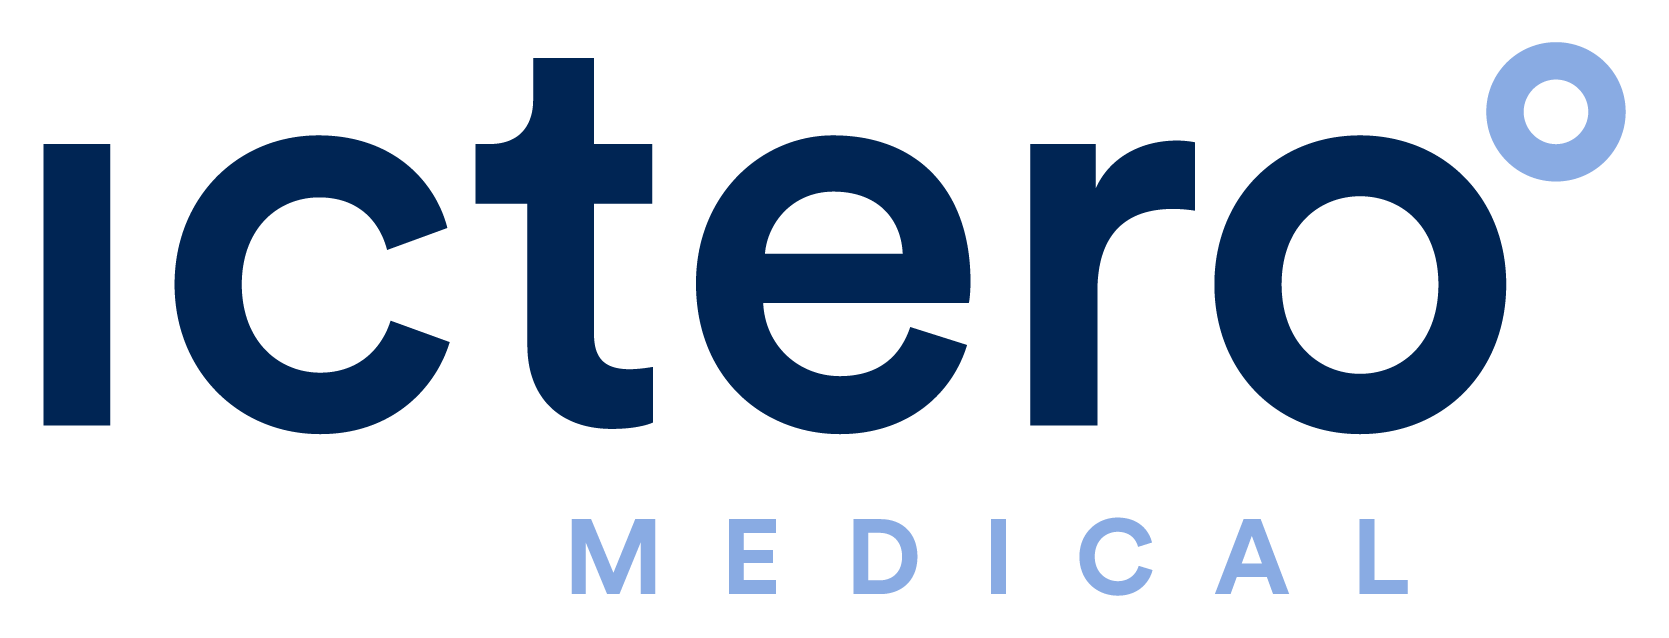 Ictero Medical